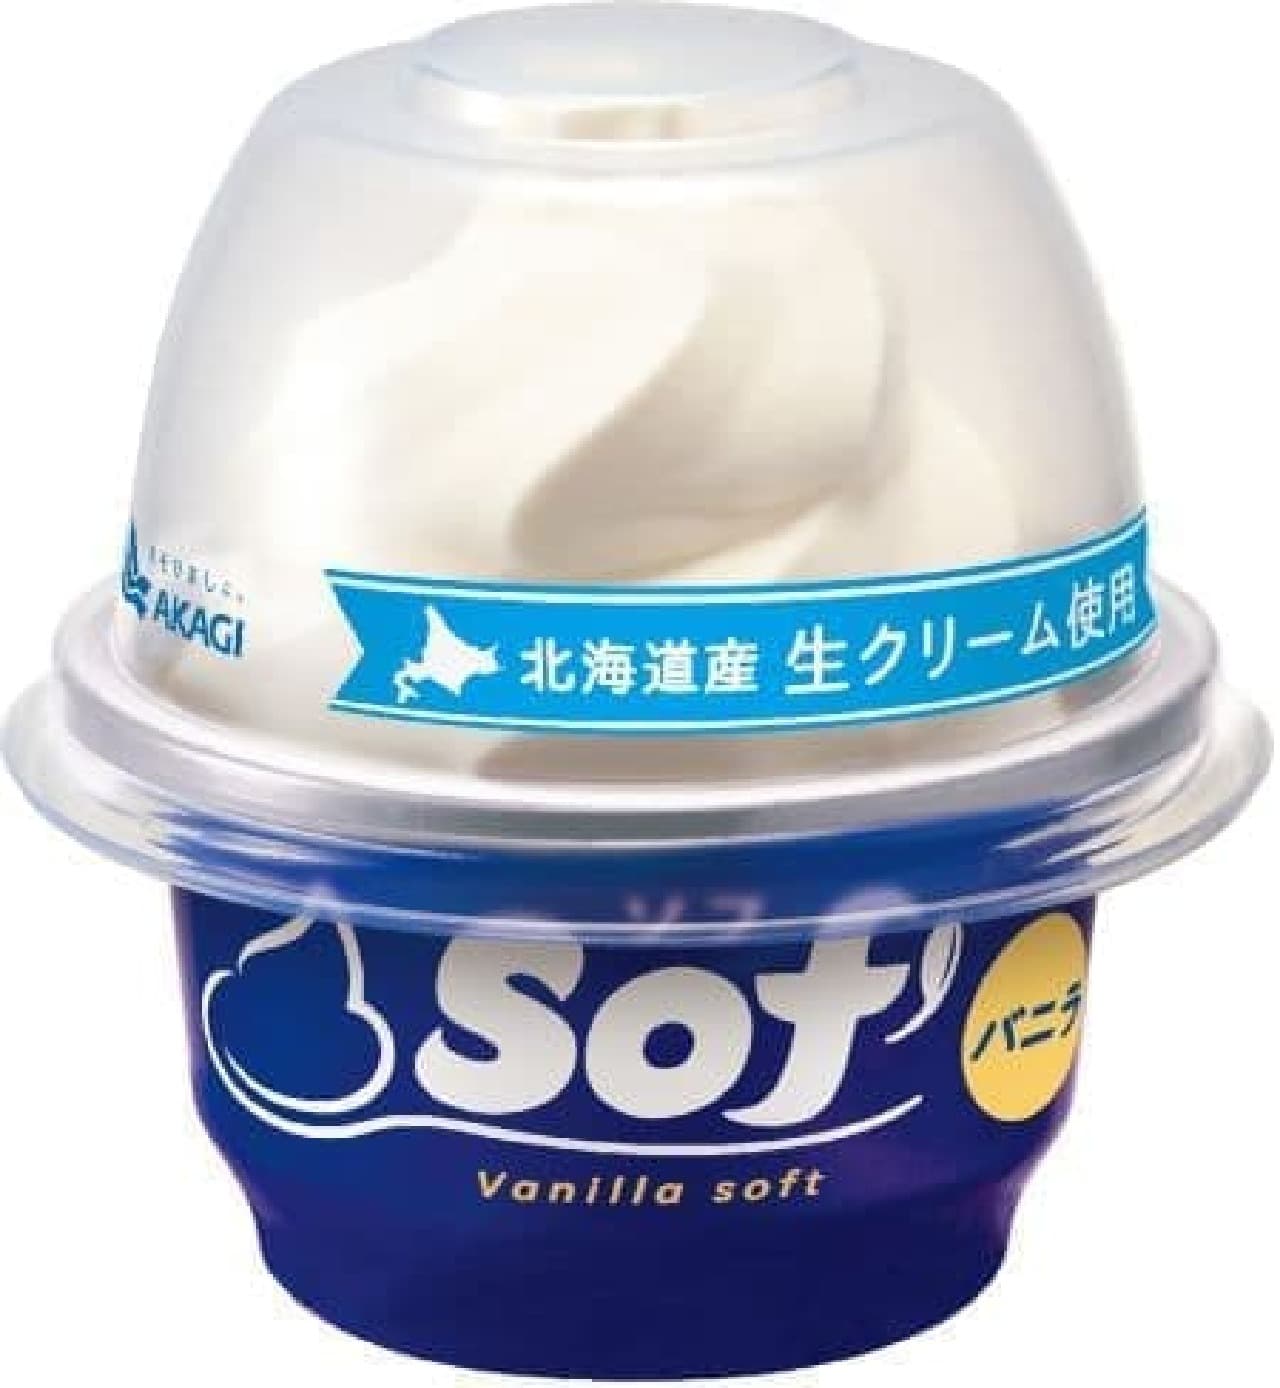 Akagi Nyugyo "Sof'" vanilla renewed